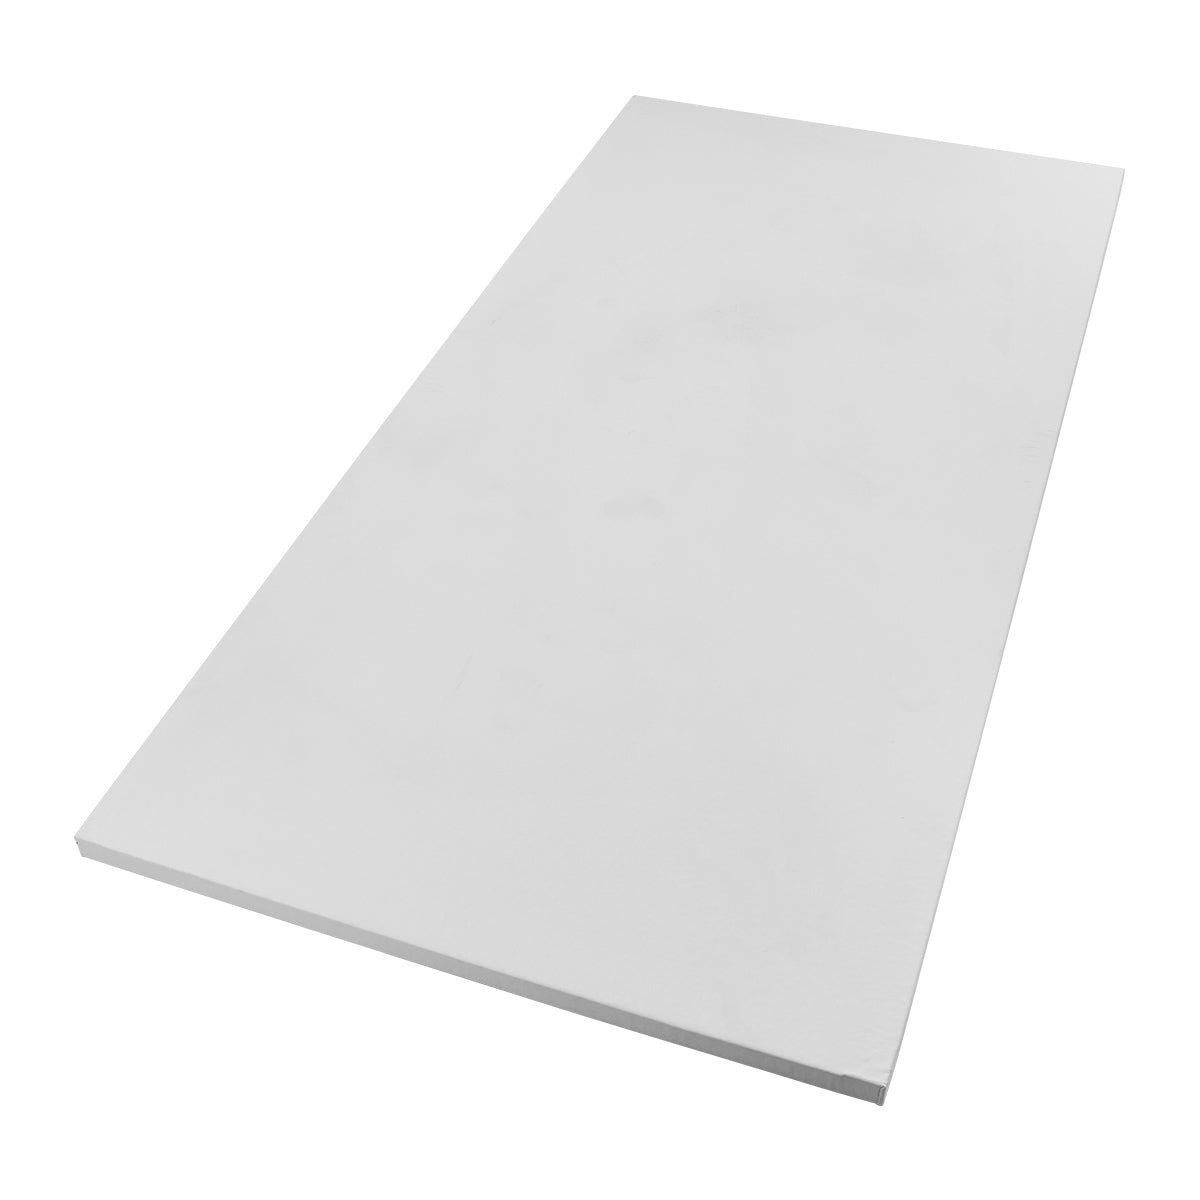 Smooth Tile Mat - 1m x 2m 1.5" White